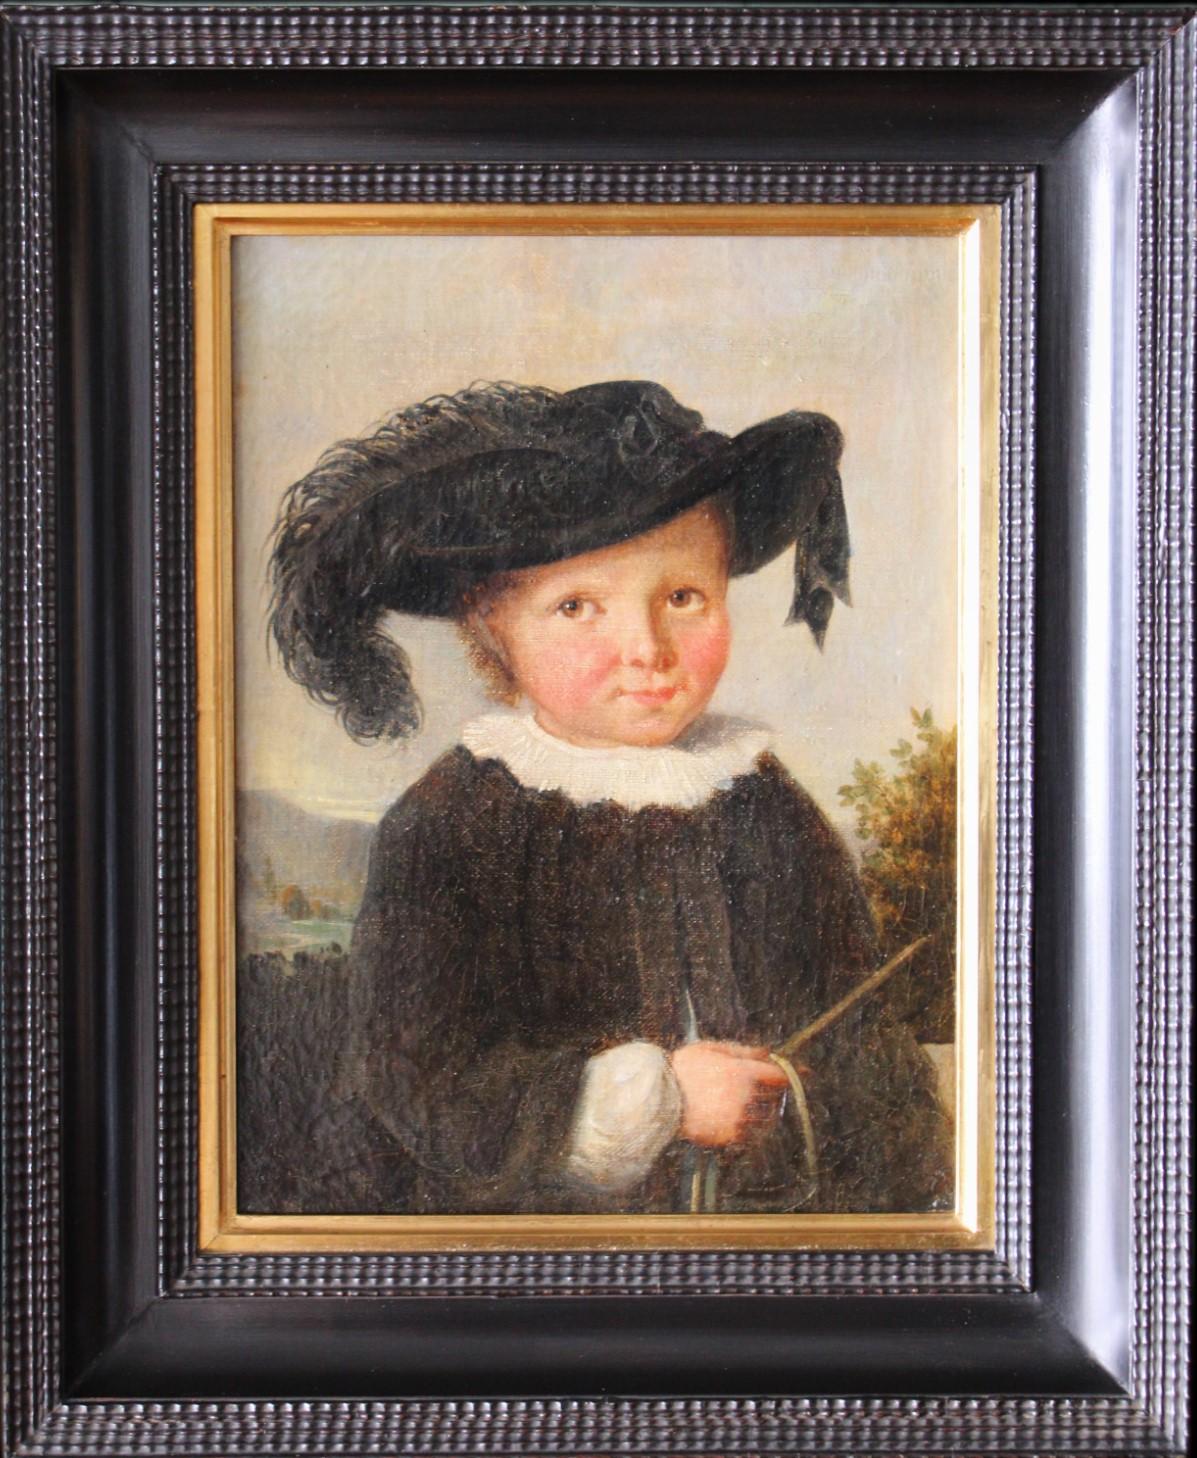 Antique portrait of a boy, child portrait, early 1800's male framed portrait